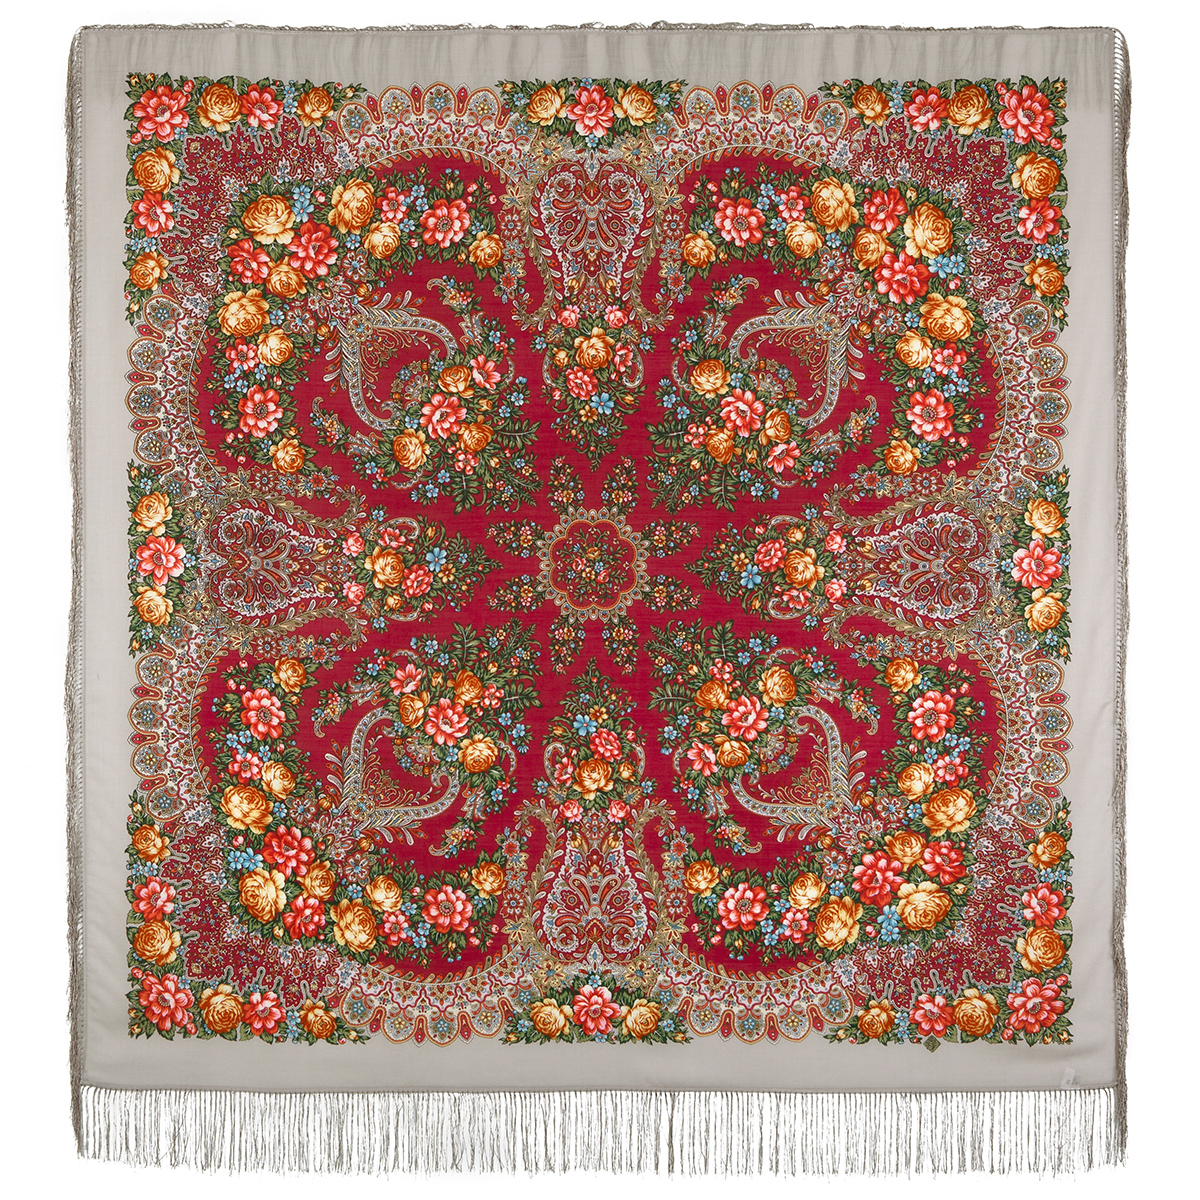 Платок женский Павловопосадский платок 1727 серый/бордовый/розовый/бежевый, 146х146 см